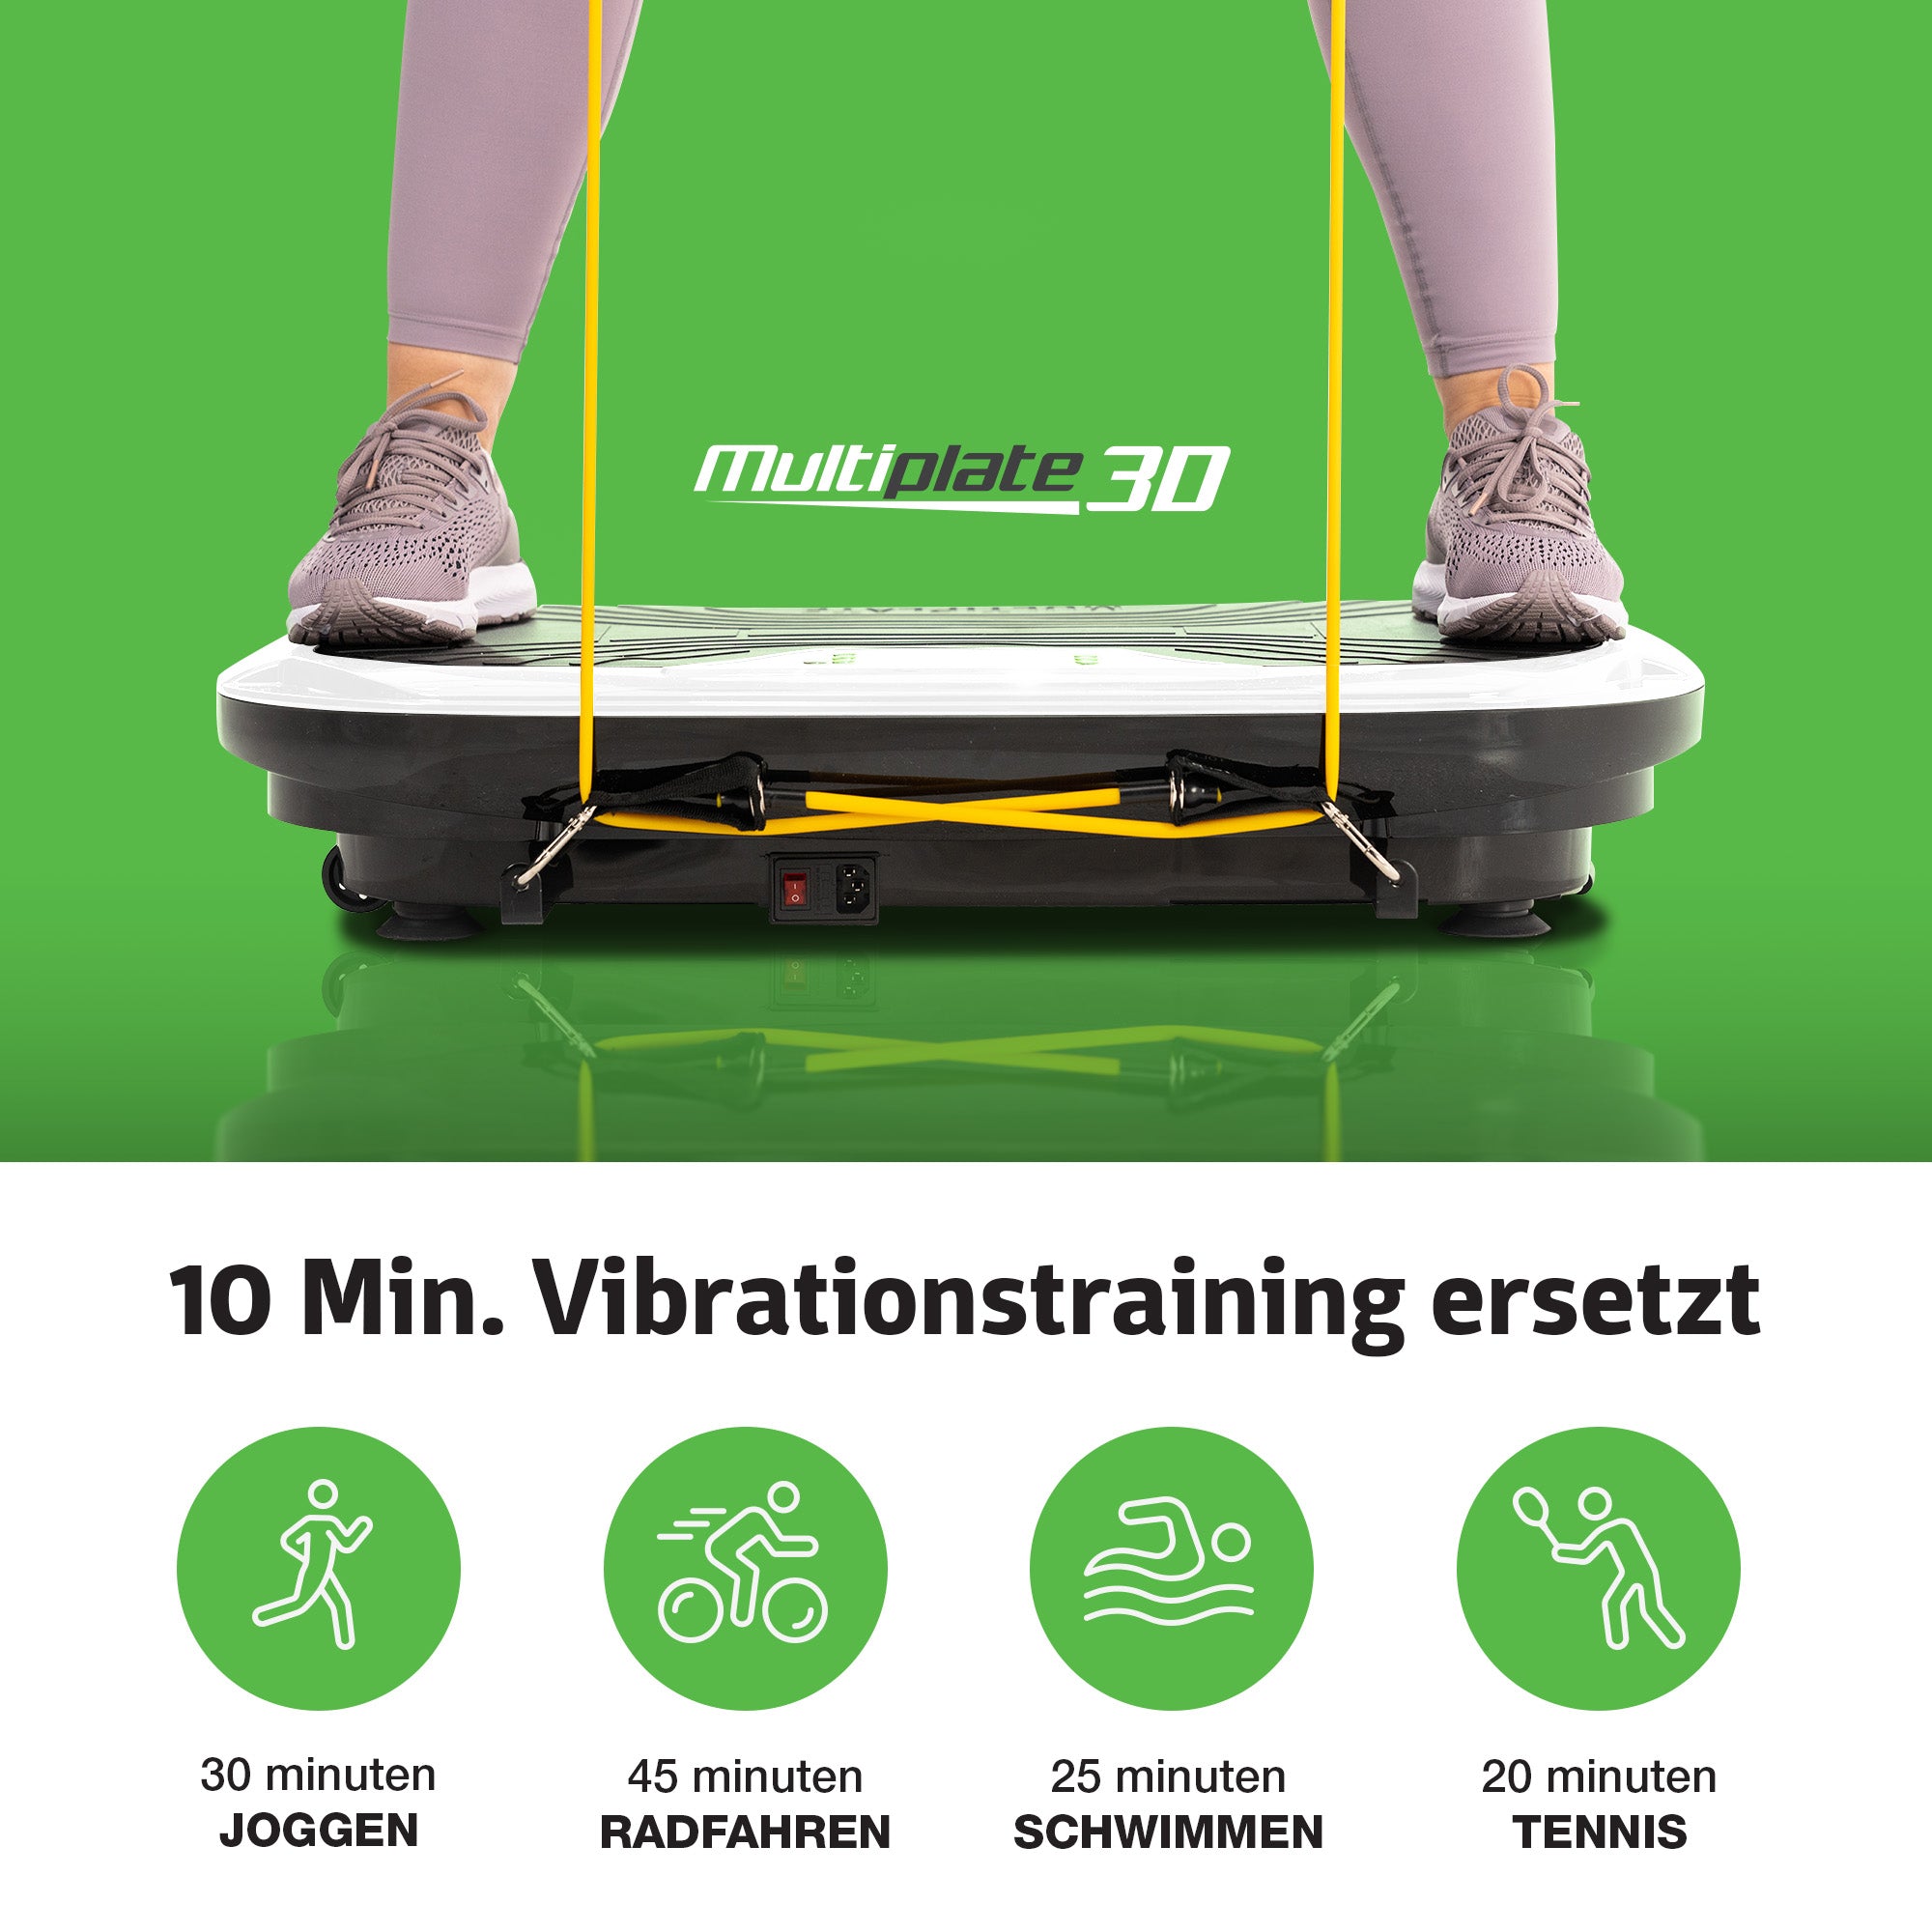 Vibrationstraining  mit Thera Vibroplatte und Sportsitz: 10 Minuten ersetzt 30 Minuten Joggen, 45 Minuten Radfahren, 25 Minuten Schwimmen